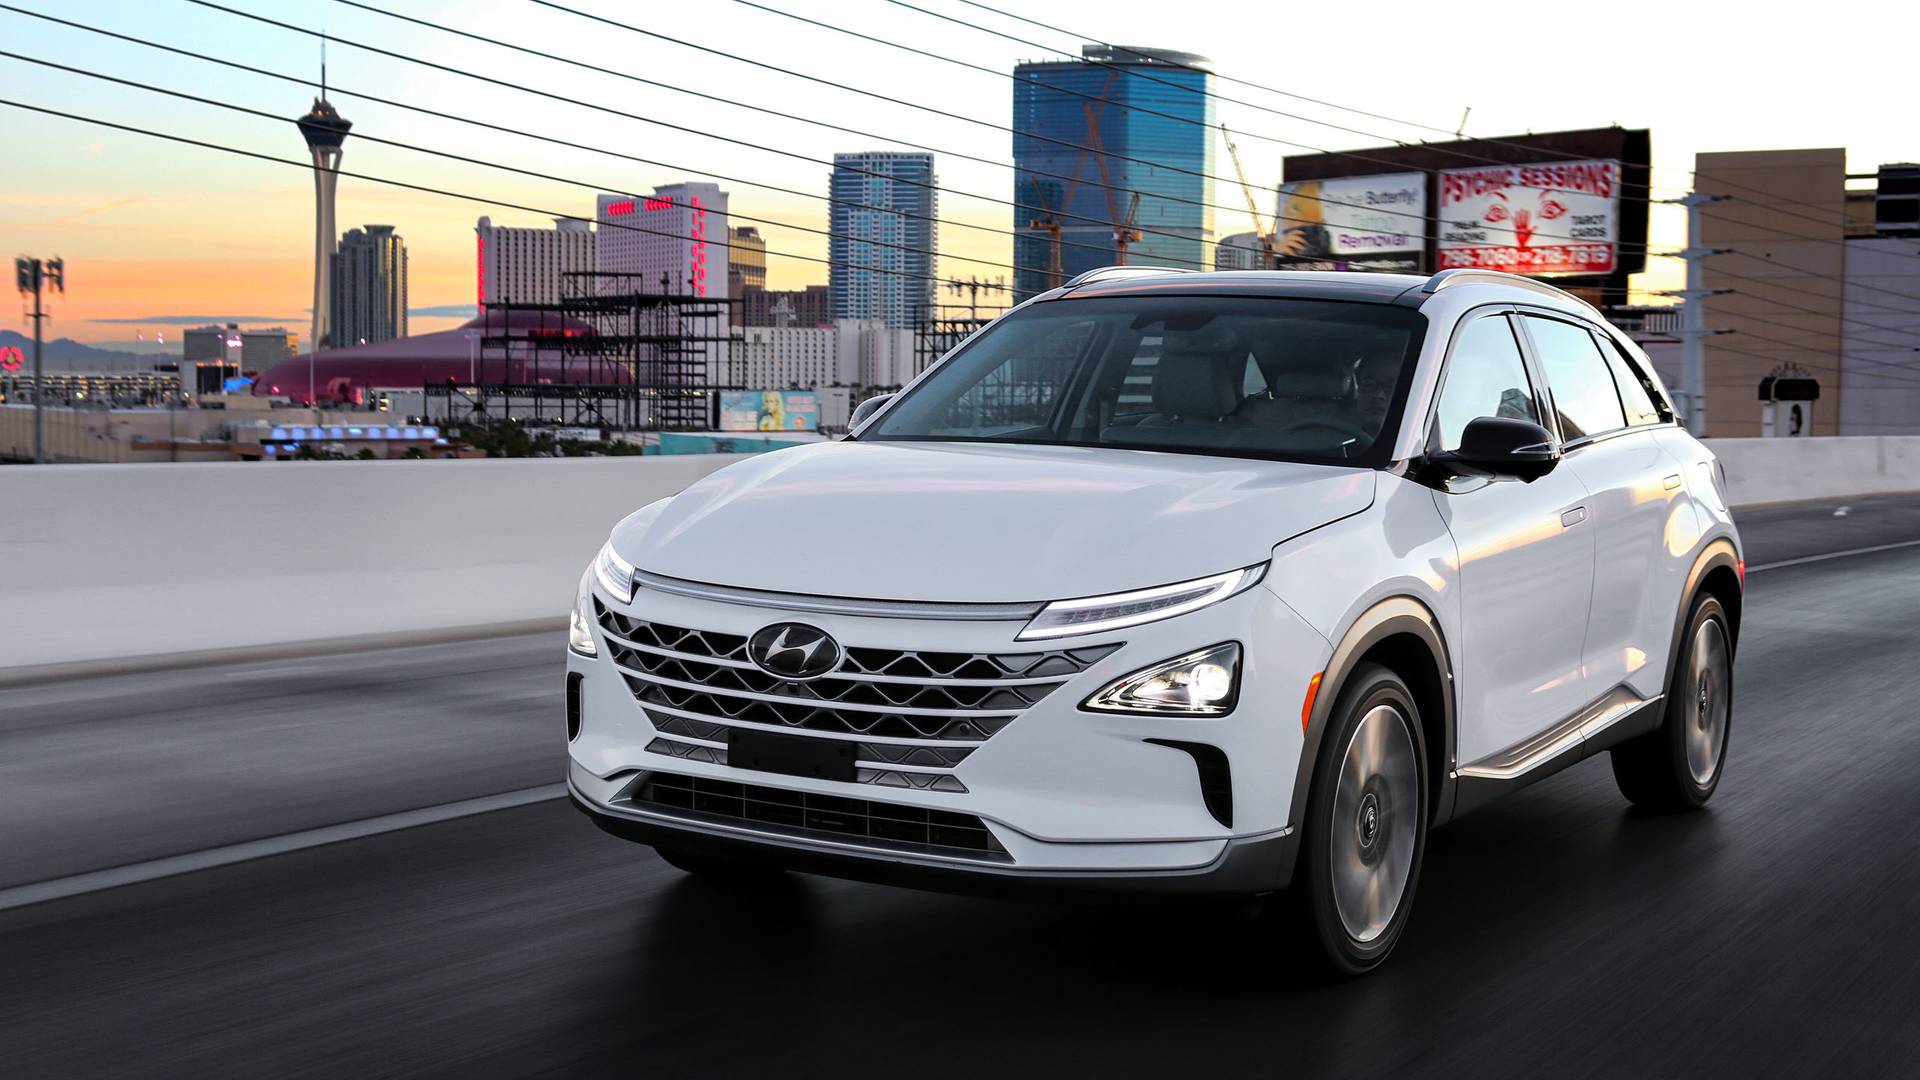 Hyundai Nexo News and Reviews | Motor1.com